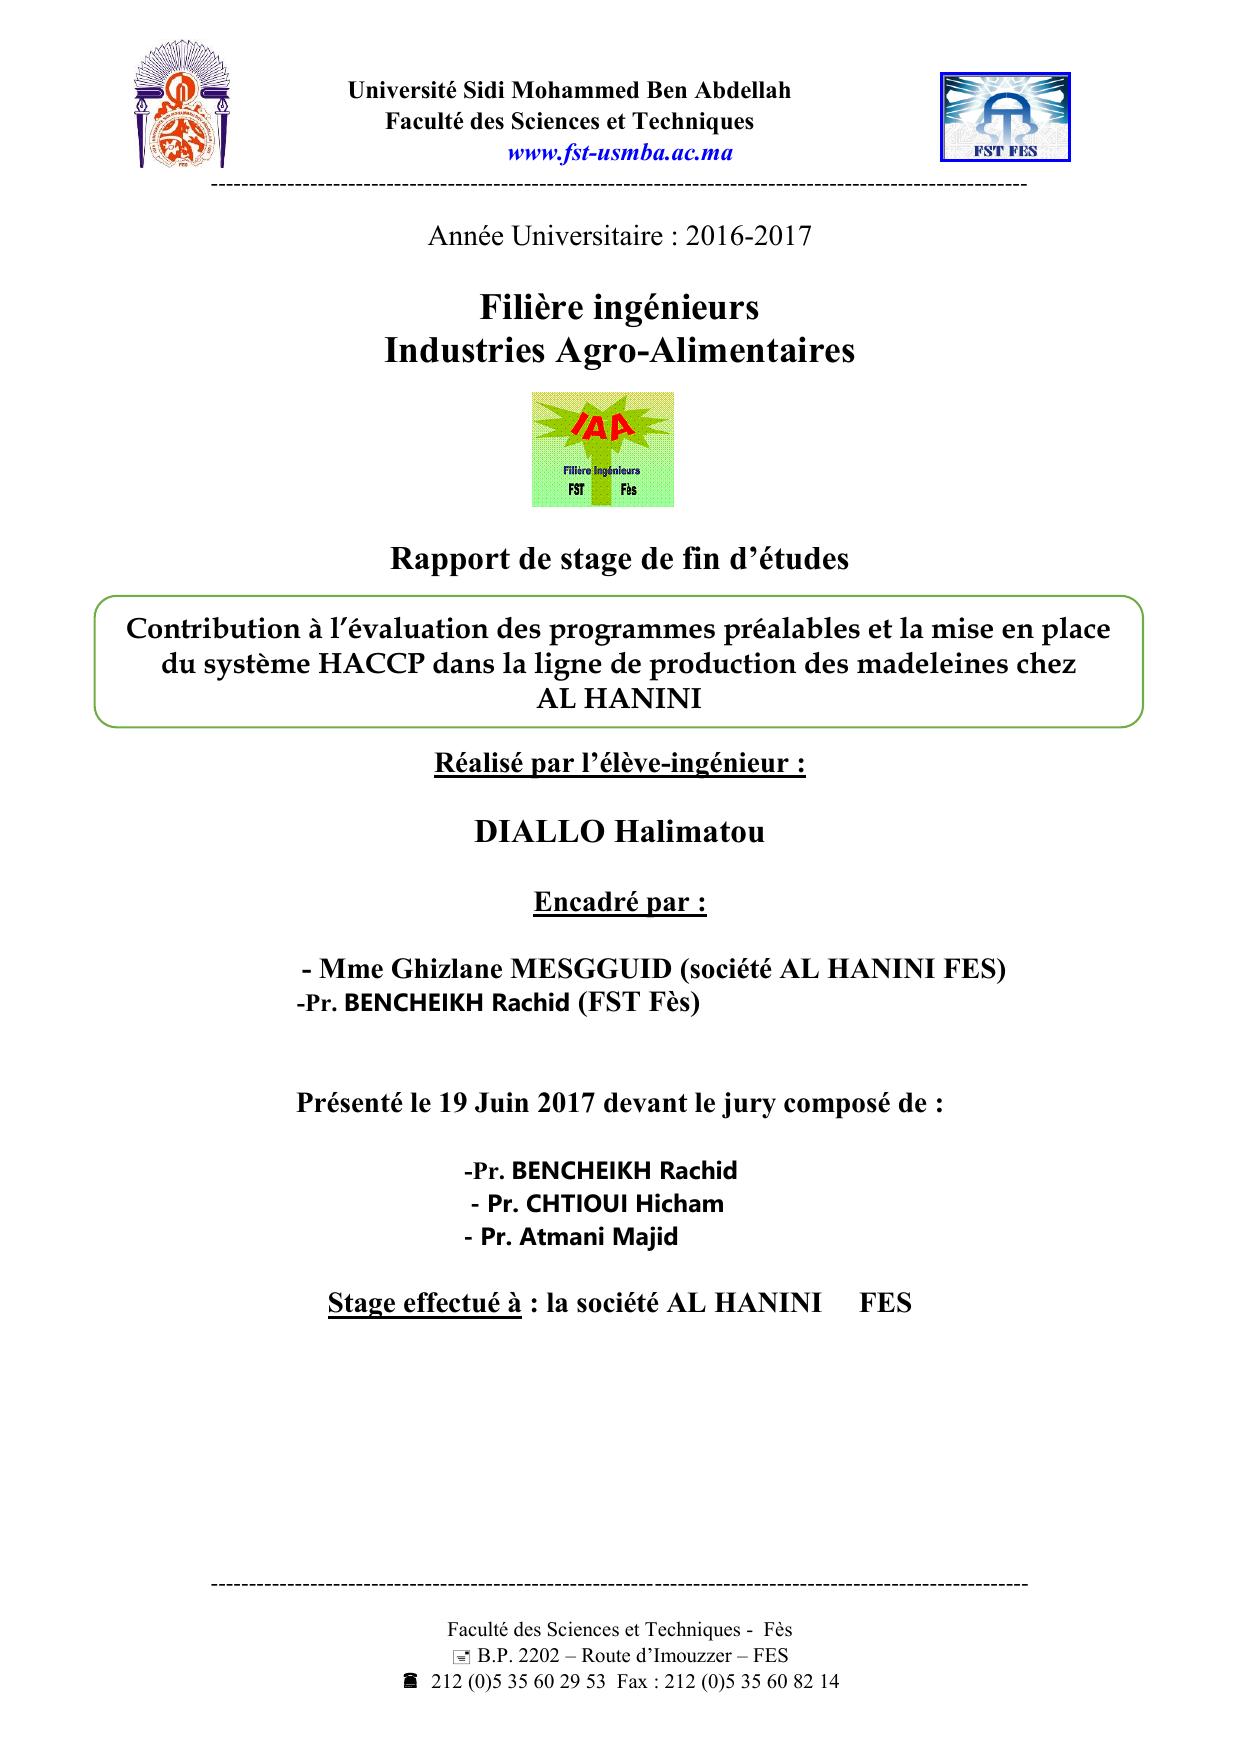 Contribution à l’évaluation des programmes préalables et la mise en place du système HACCP dans la ligne de production des madeleines chez AL HANINI